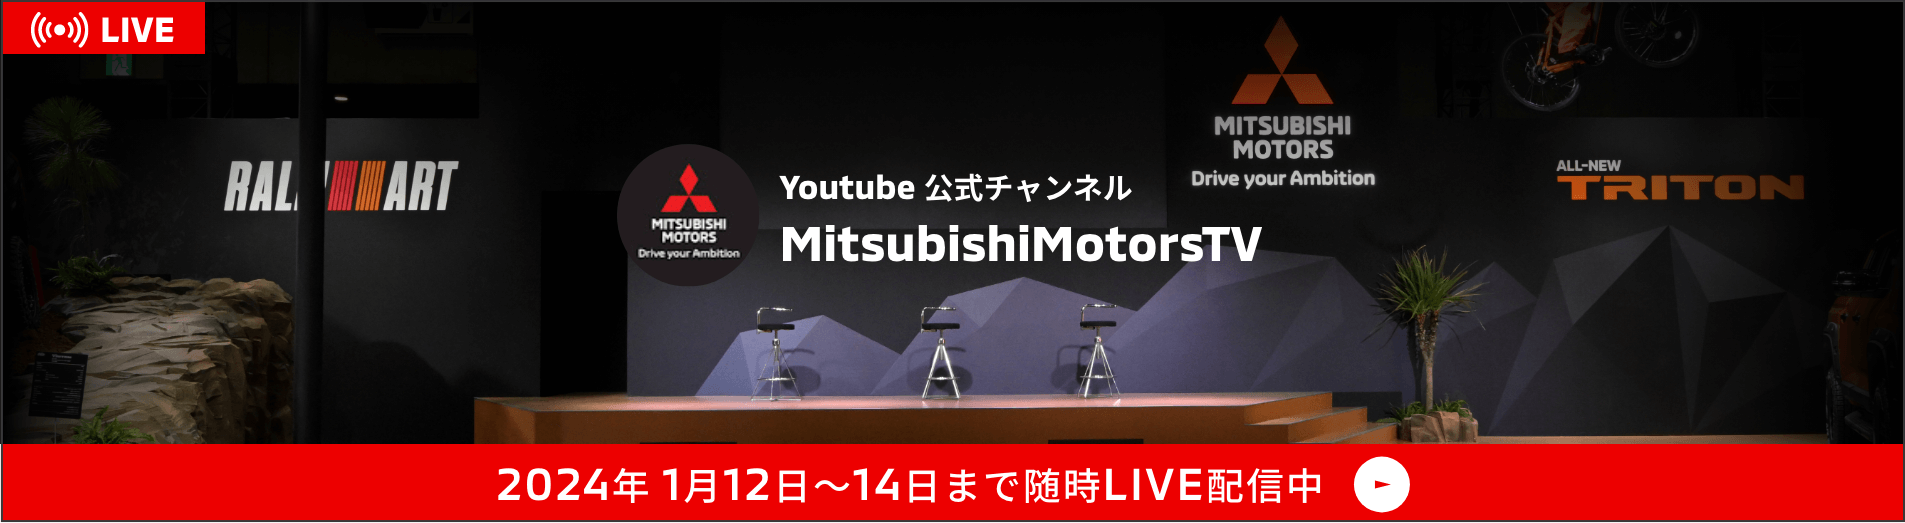 Youtube 公式チャンネル Mitsubishi Motors TV 2024年1月12日〜14日まで随時LIVE配信中